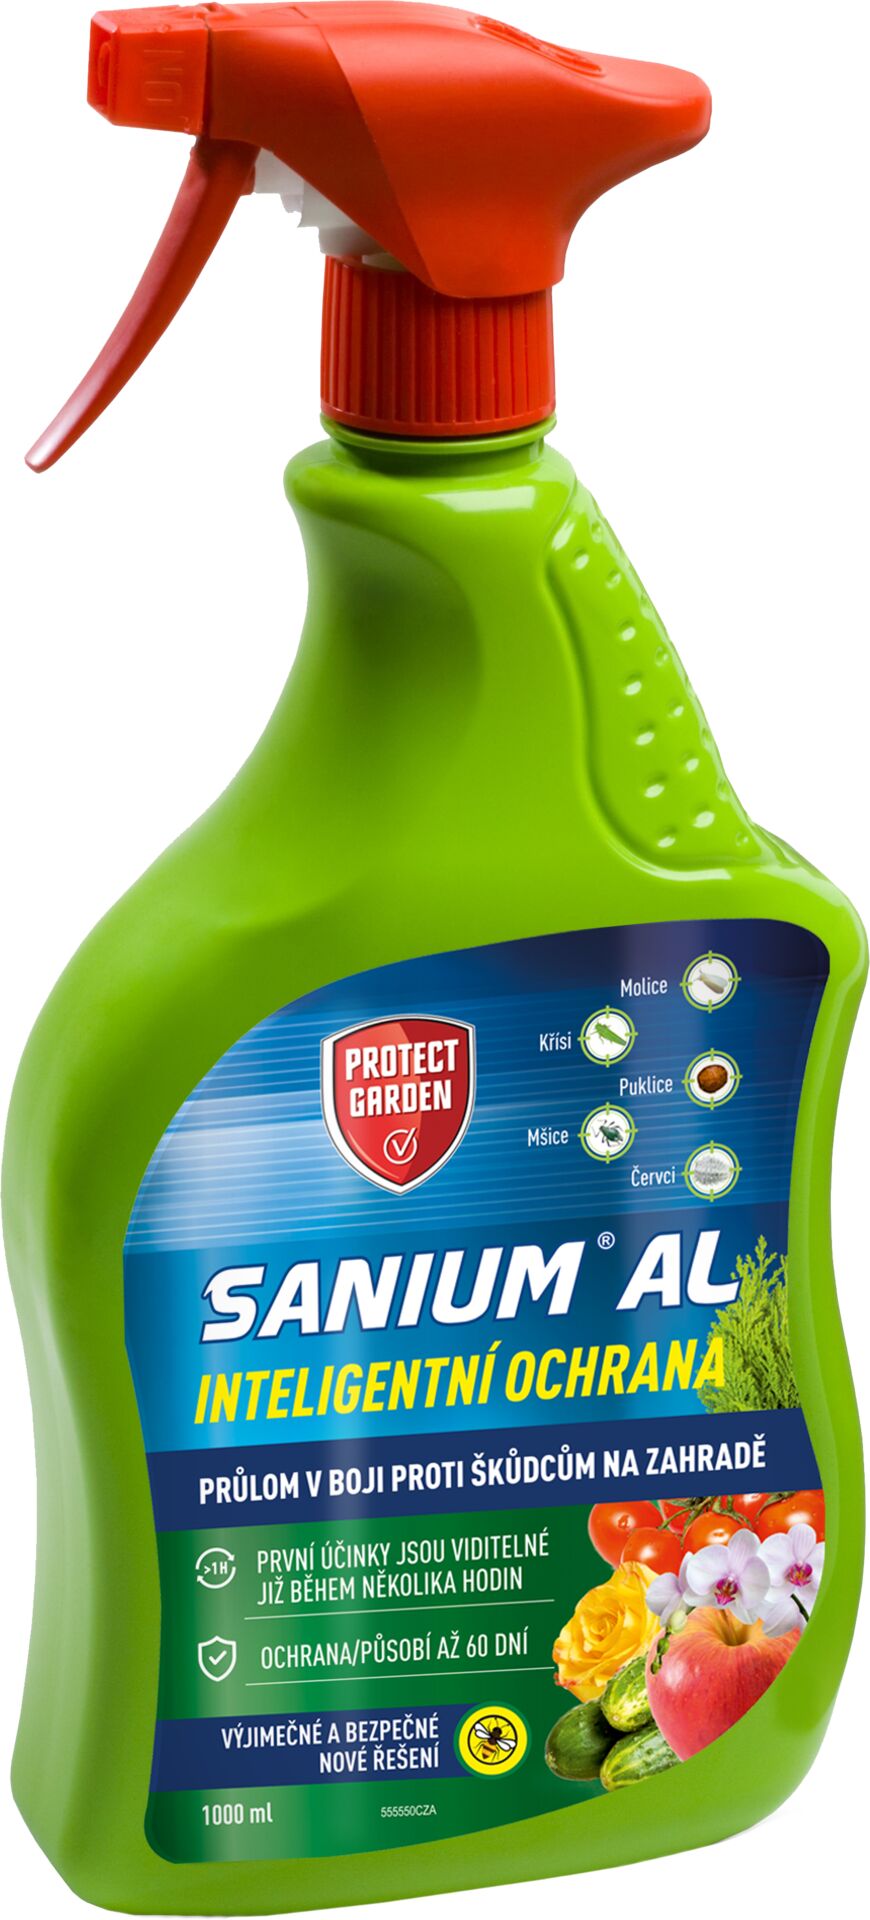 Sanium AL 1l - PROTECT GARDEN - 9d63b5dd 0950 41a7 8df4 17ea2114d871